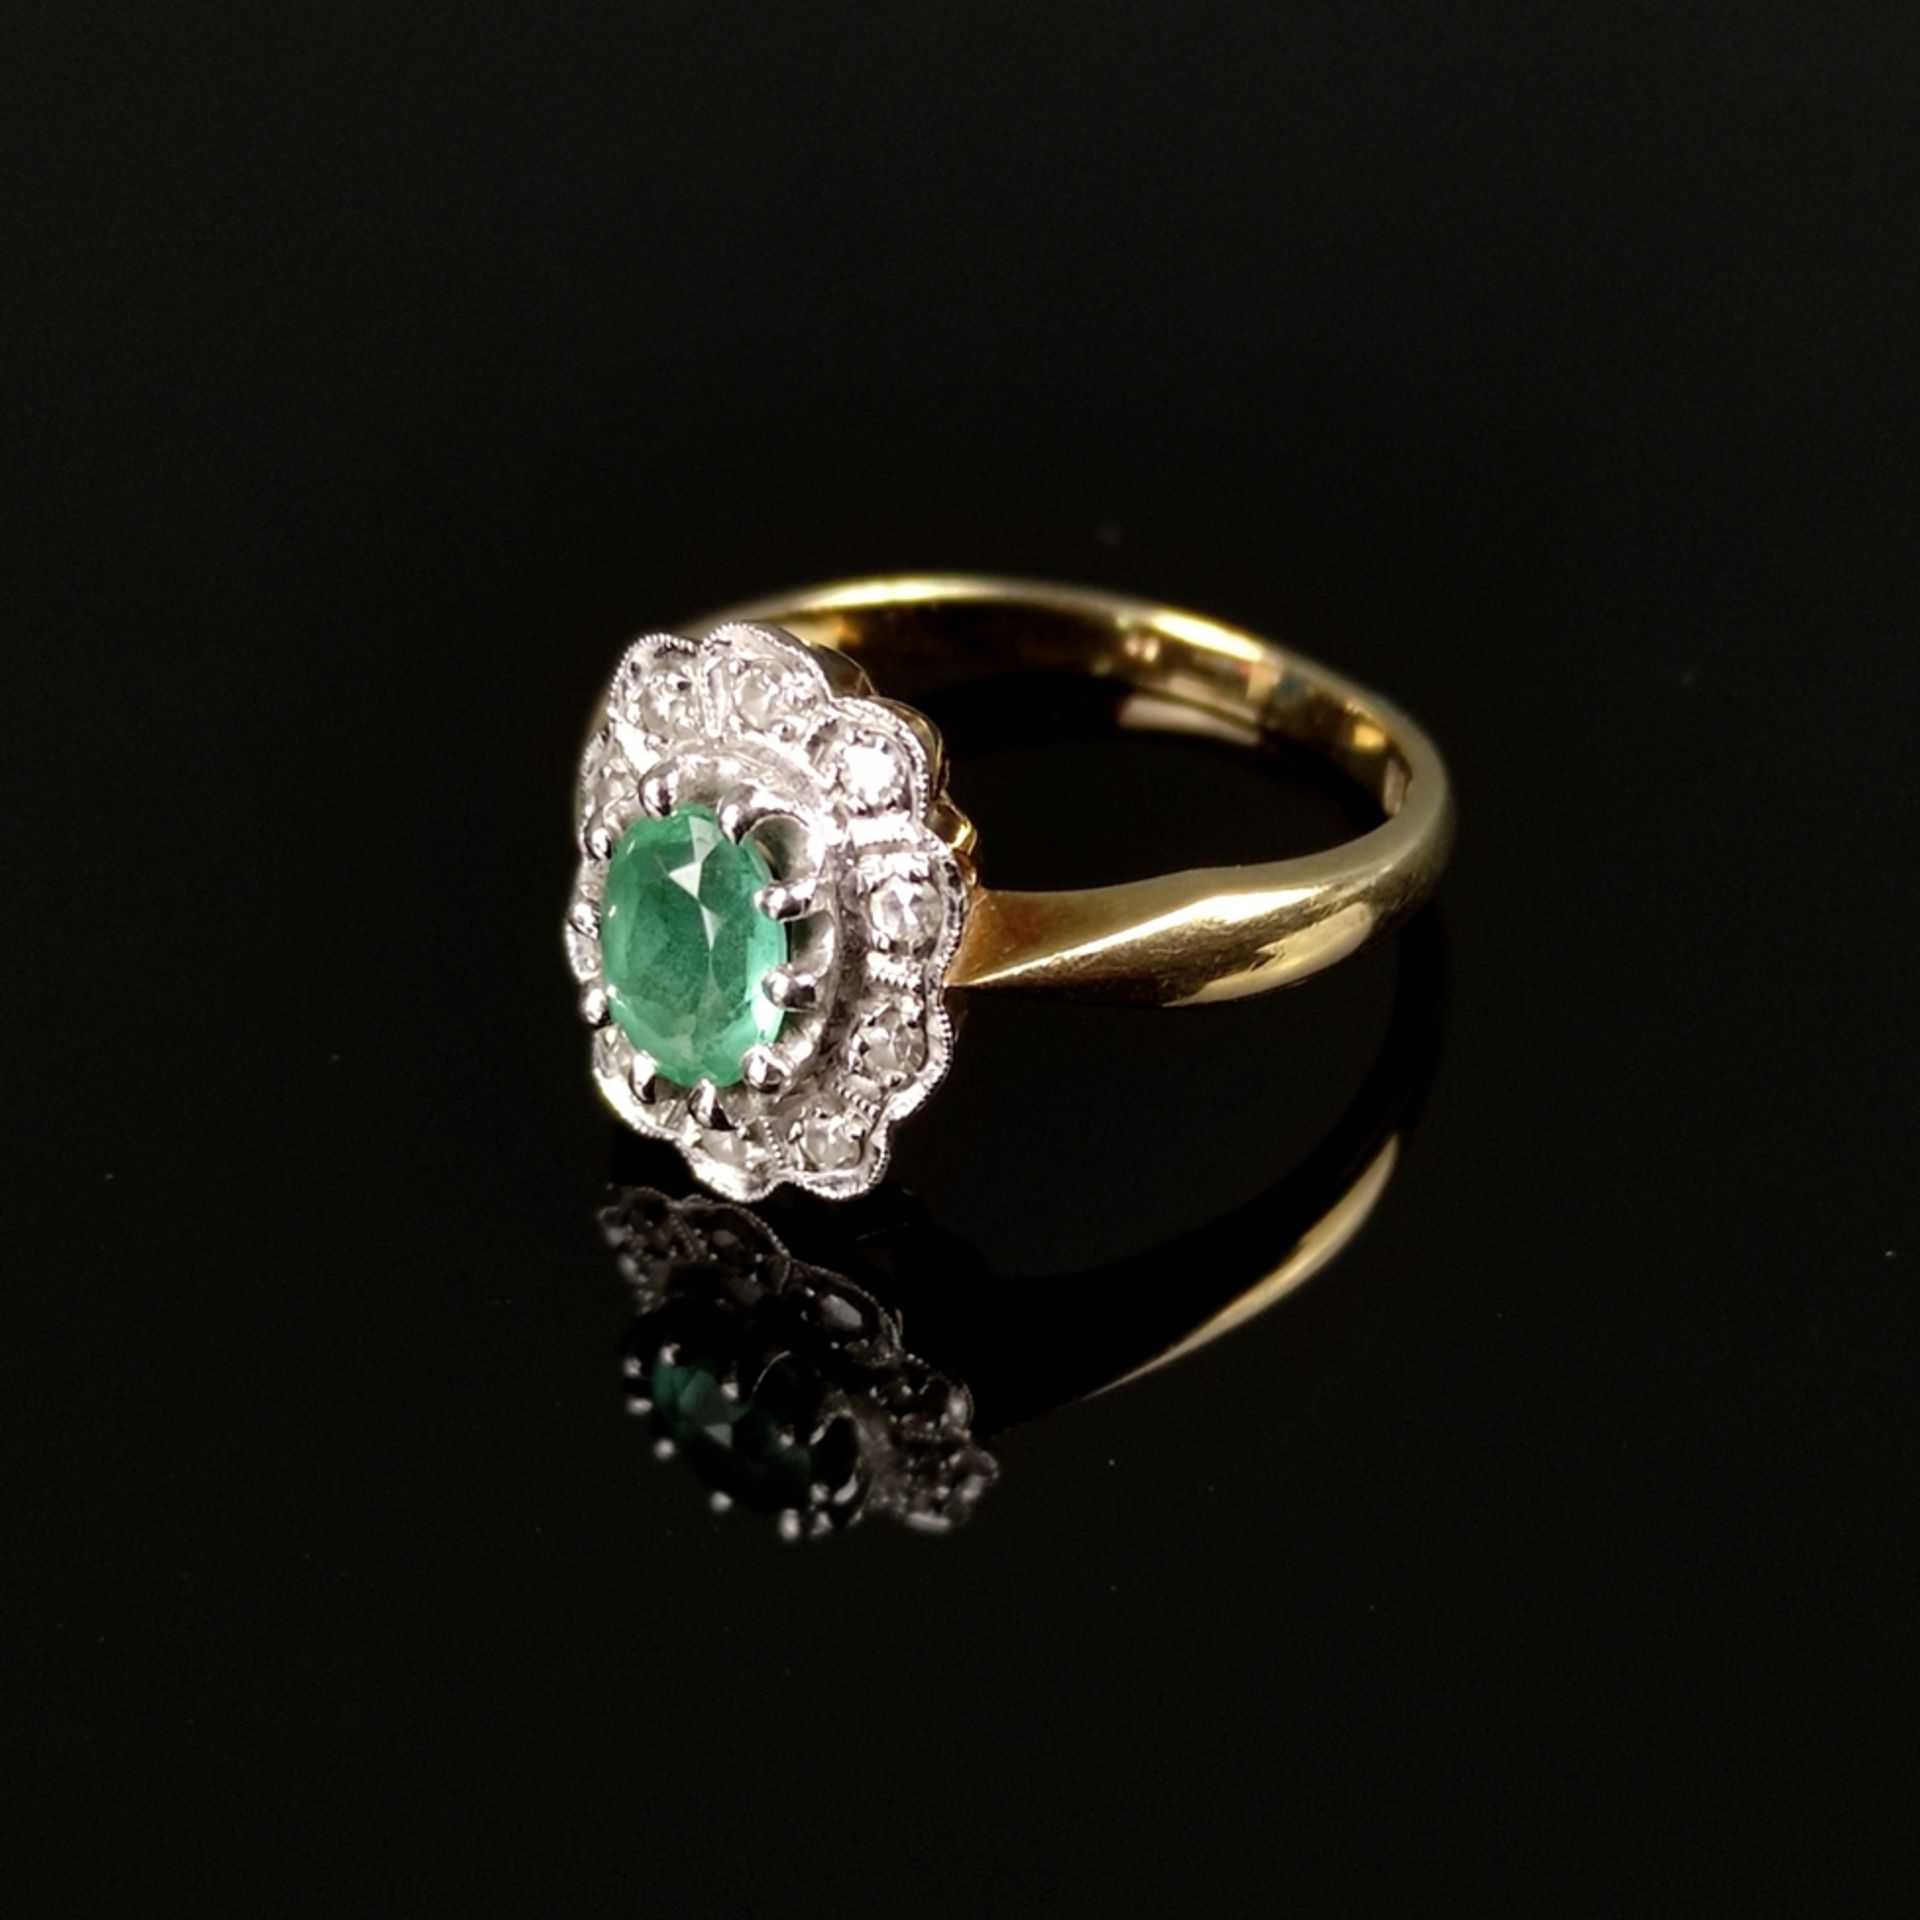 Smaragd-Diamantring, 585/14K Weiß-/Gelbgold (punziert), 3,59g, mittig besetzt mit facettiertem oval